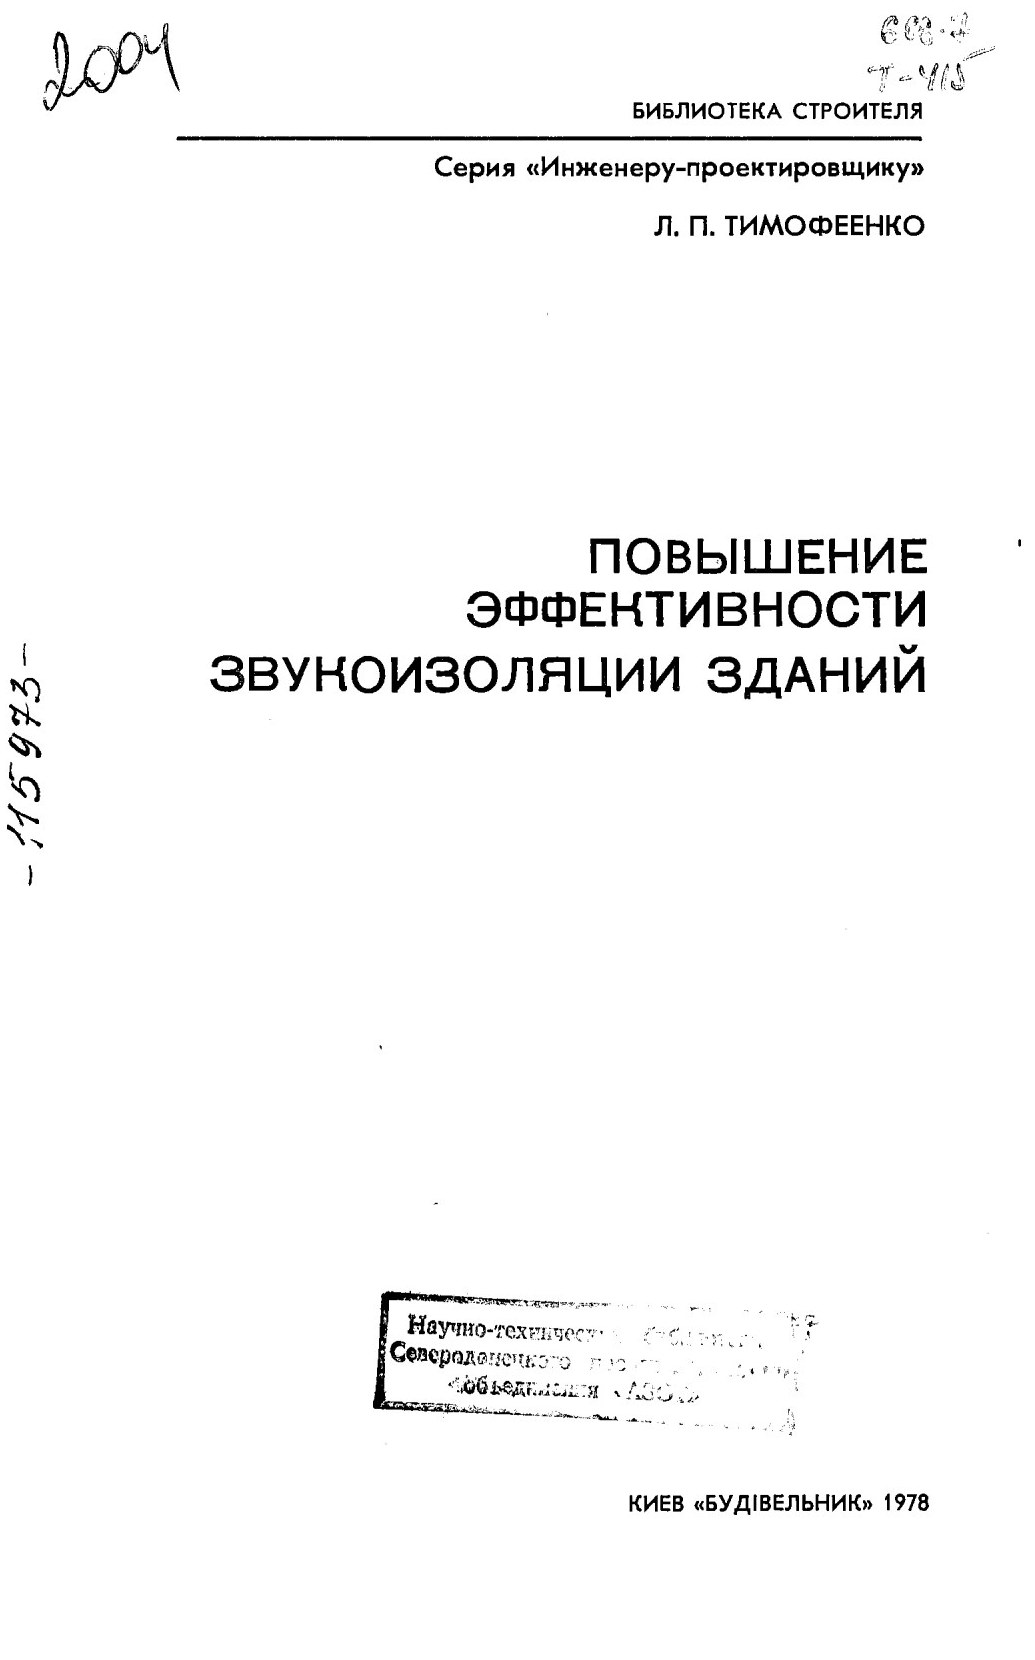 Повышение эффективности звукоизоляции зданий / Л. П. Тимофеенко. — Киев : «Будівельник», 1978